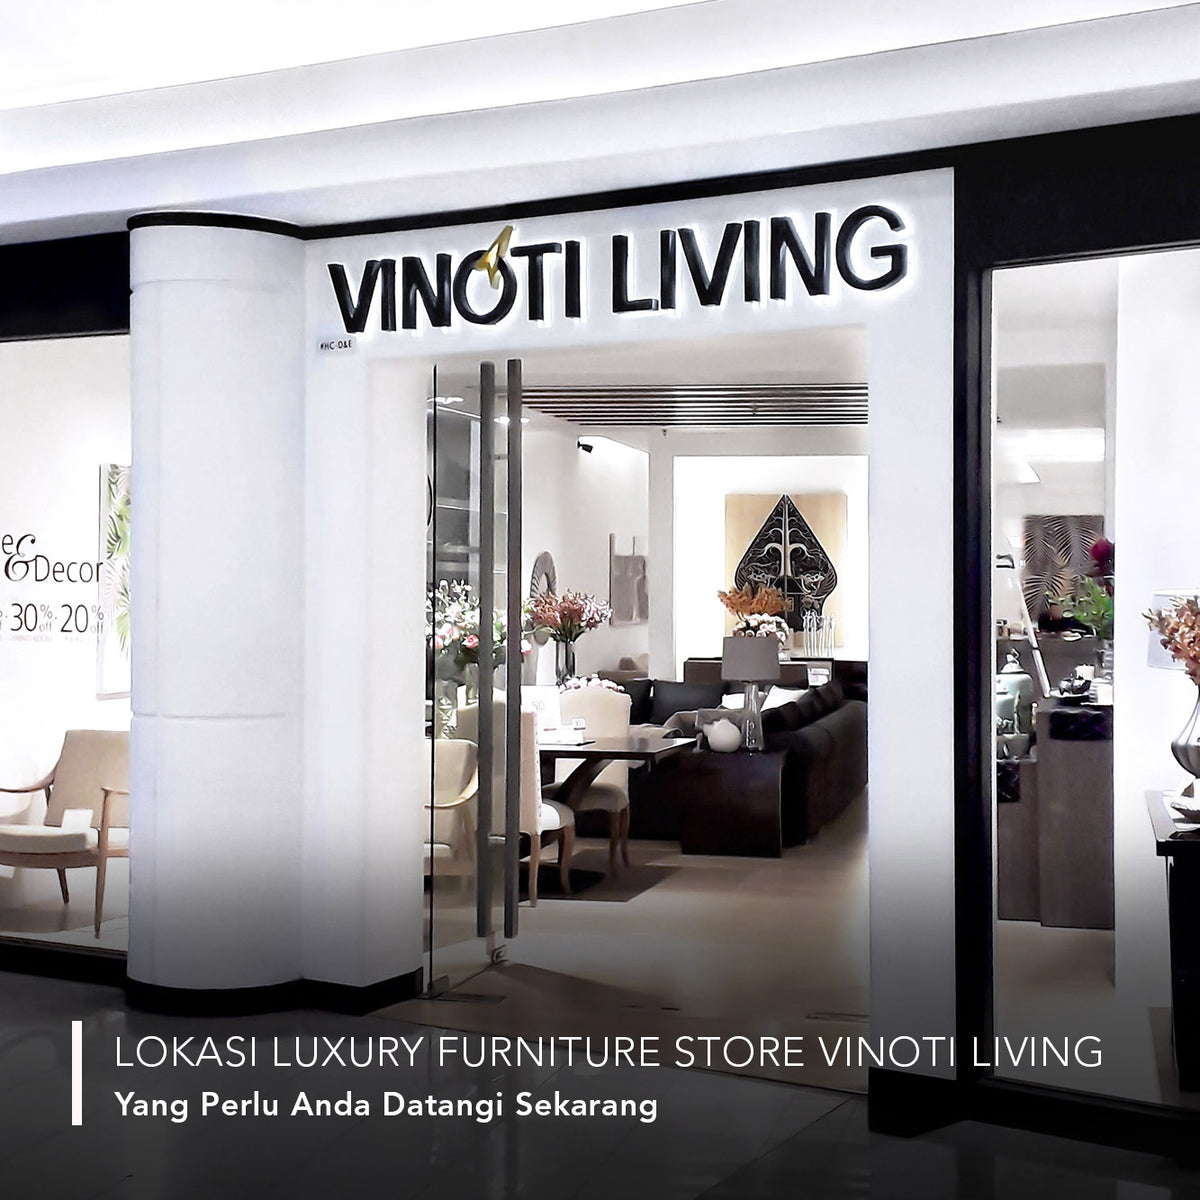 Lokasi Luxury Furniture Store Vinoti Living yang Perlu Anda Datangi Sekarang